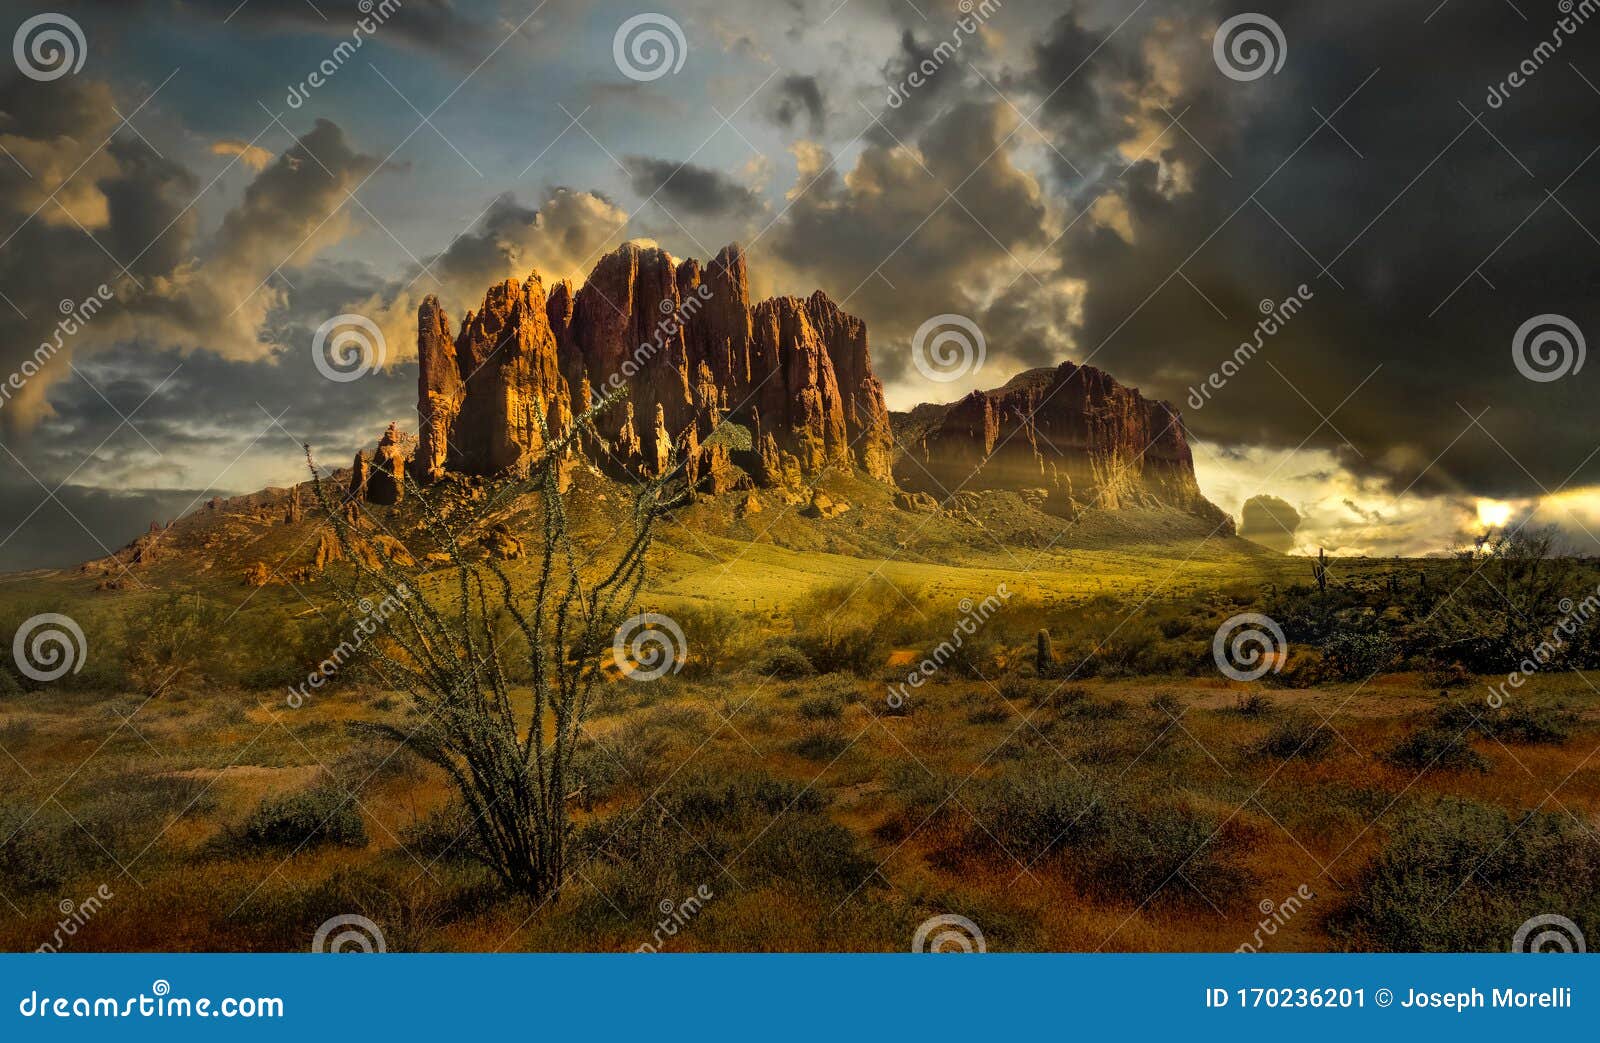 superstitution mountains, mesa az